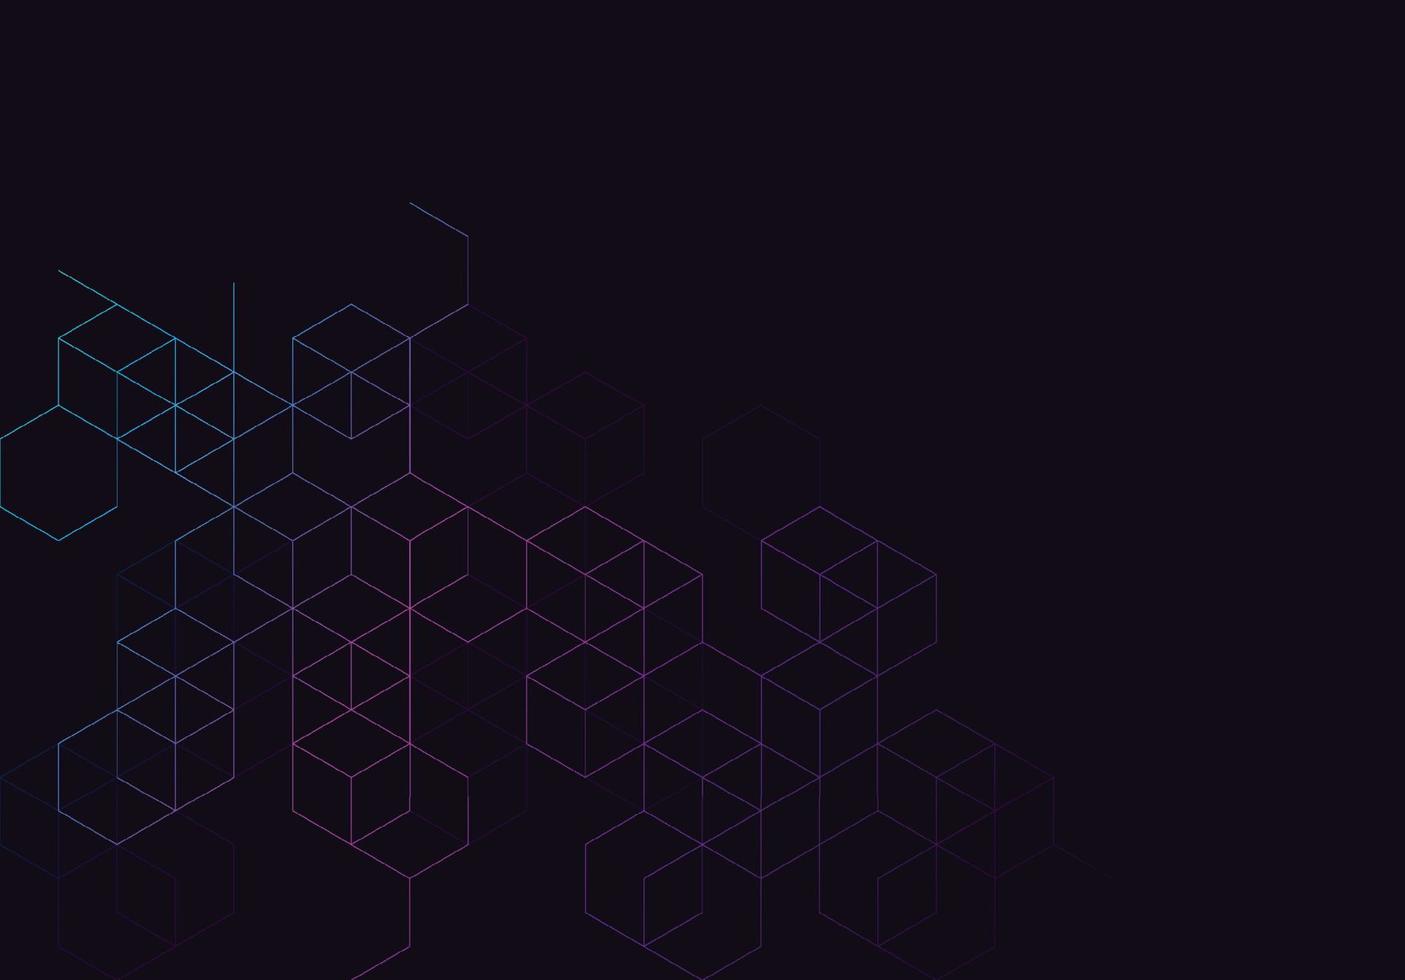 bannière de concept blockchain avec polygone géométrique abstrait avec points et lignes de connexion. formation scientifique et technologique. illustration vectorielle vecteur